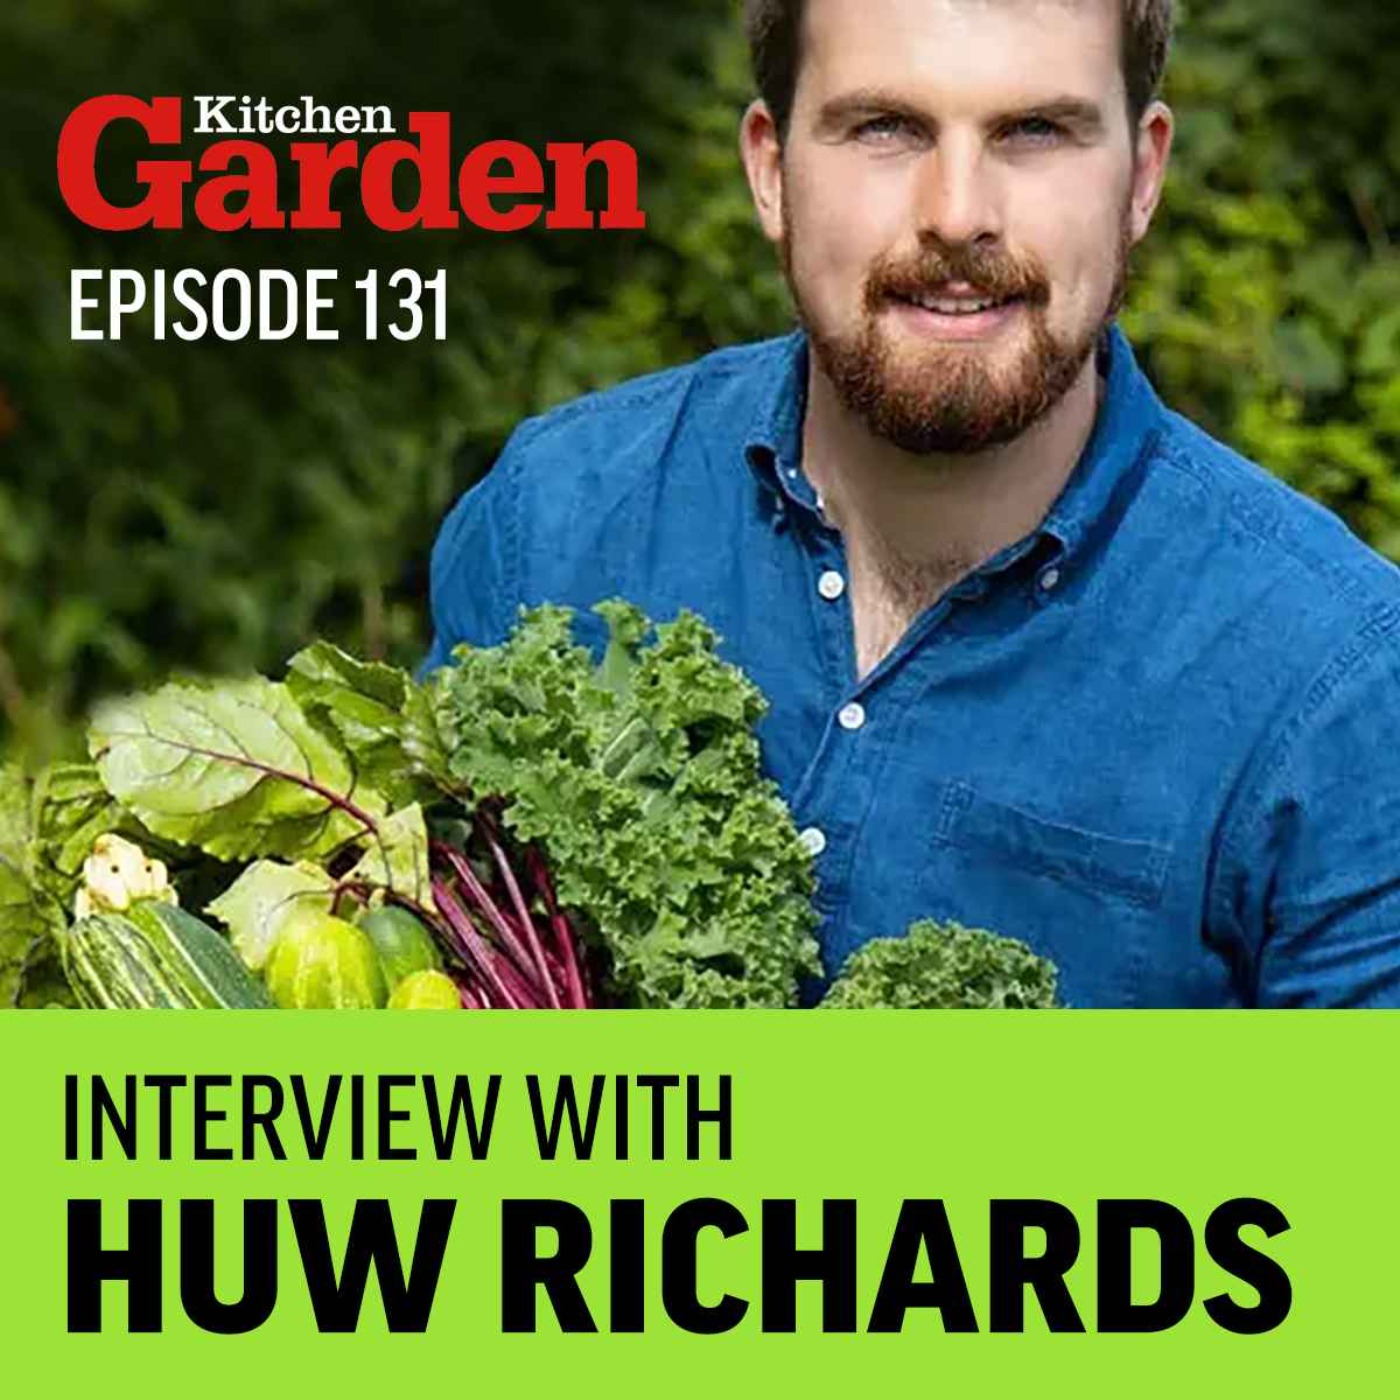 131 - Kitchen Garden Magazine interview with Huw Richards